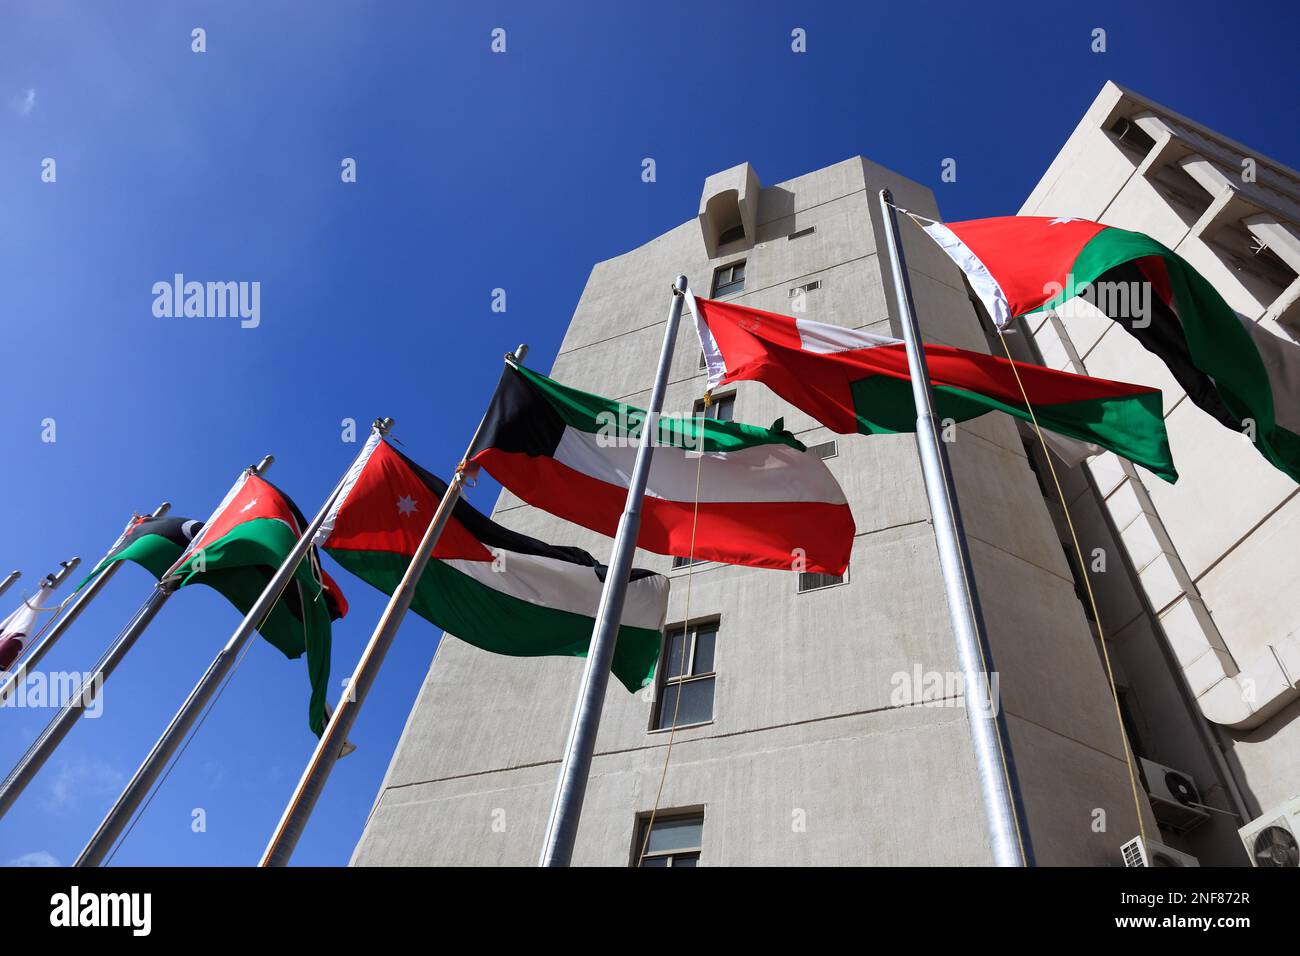 The Housing Bank, Fahnen, Amman, Jordanien  /  The Housing Bank, flags, Amman, Jordan Stock Photo